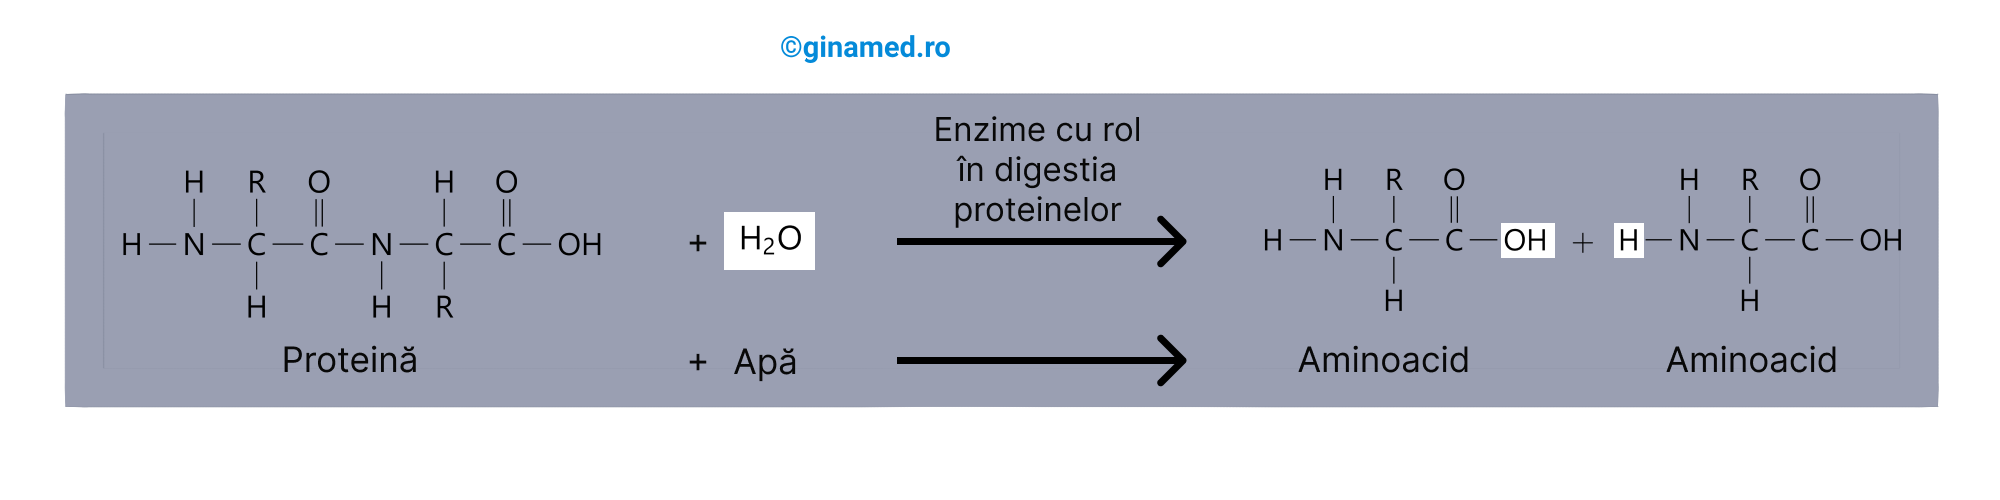 Digestia chimică a <b>proteinelor</b> în duoden.